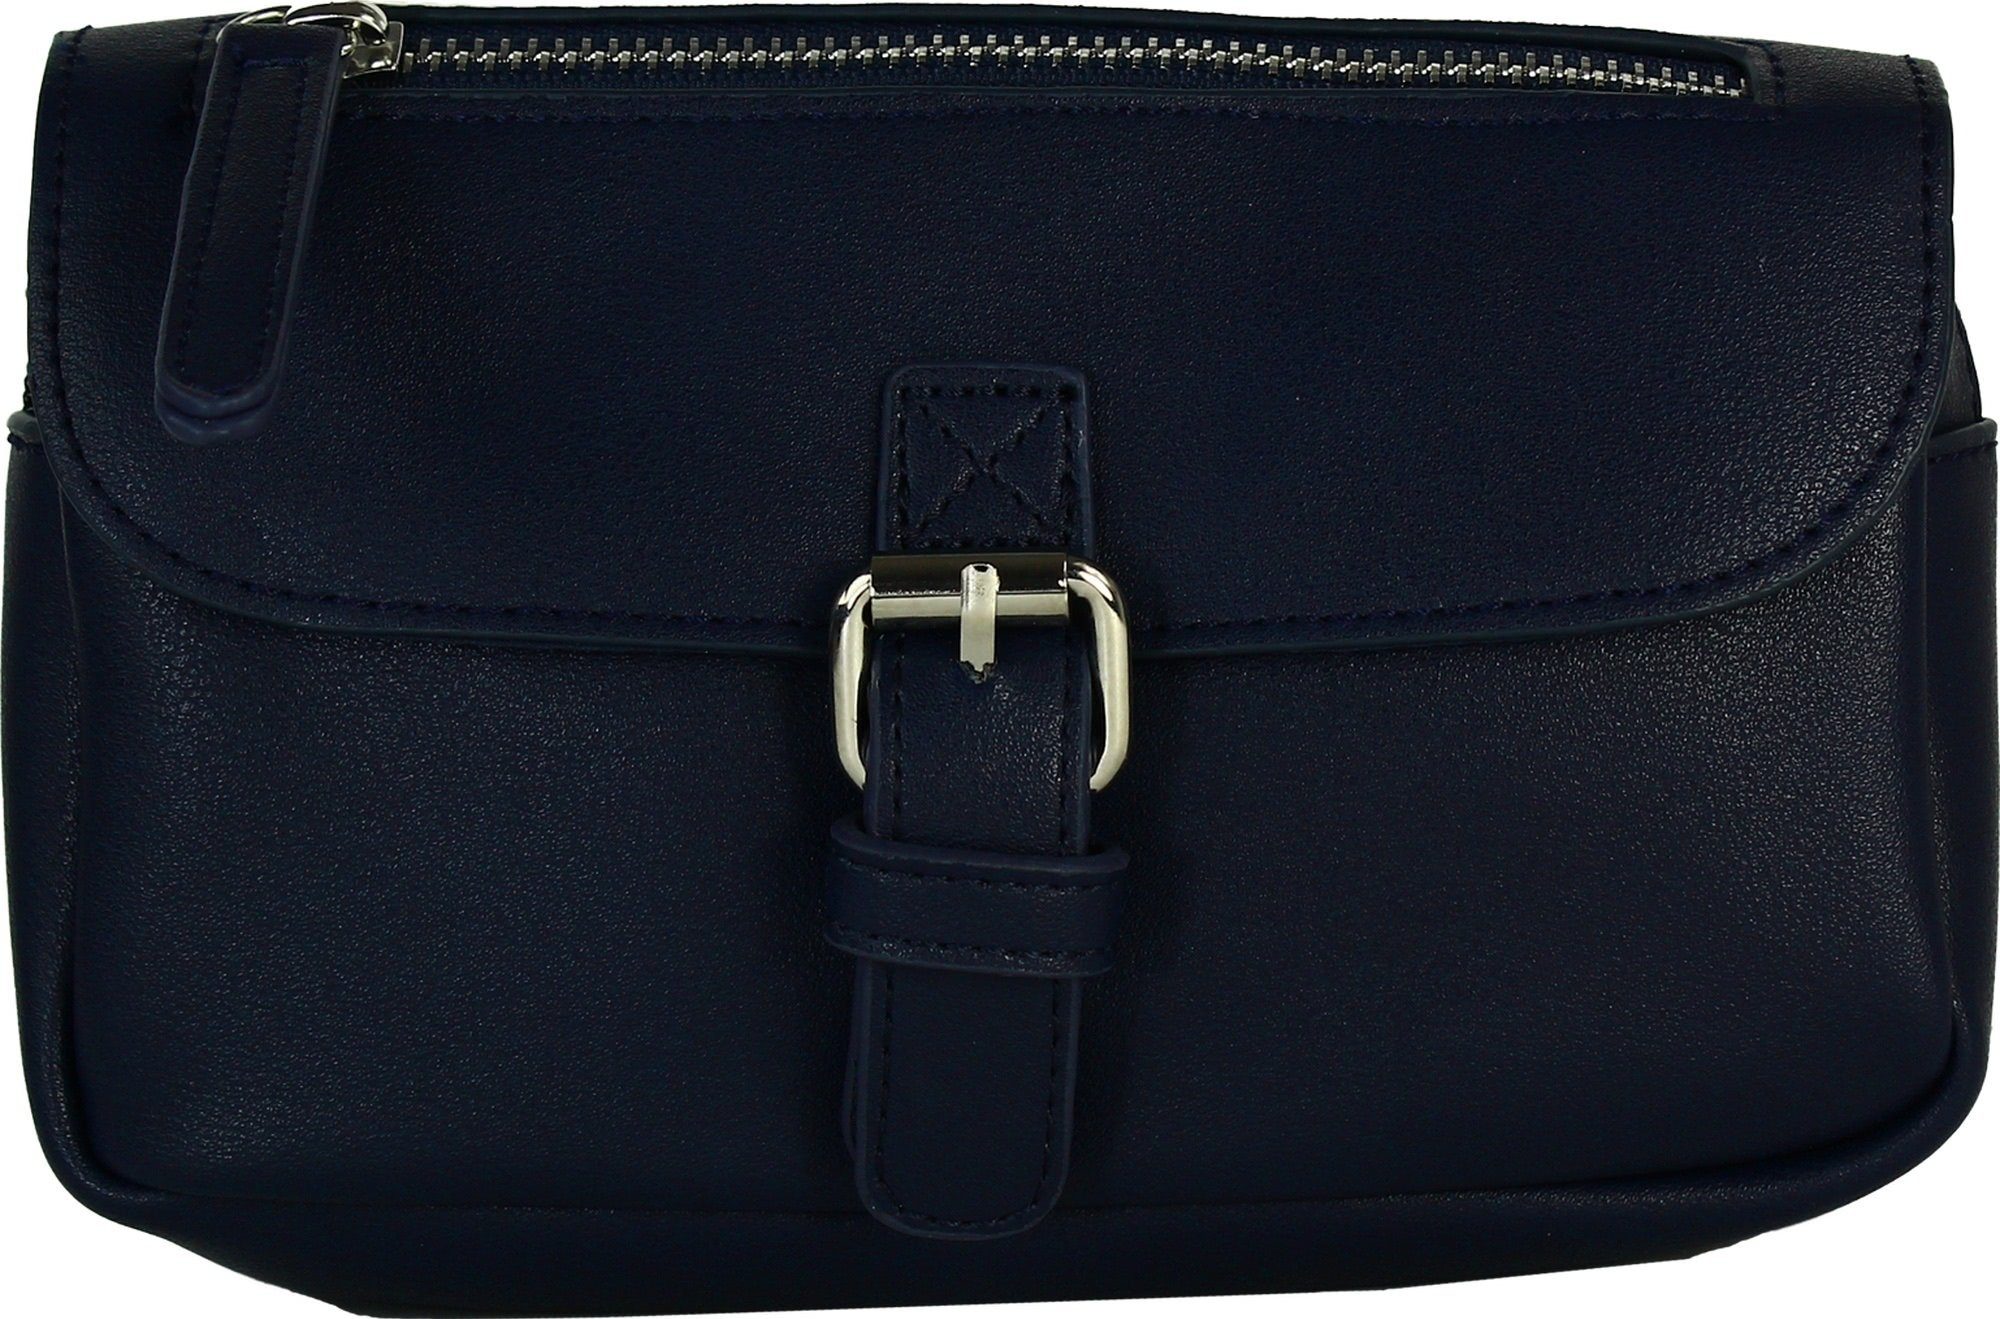 New Bags Gürteltasche OTD5024X New x Damen, 5cm Hüfttasche beige, 19cm (Gürteltasche), ca. ca. navy-blau Tasche Bags Jugend Damen eckig